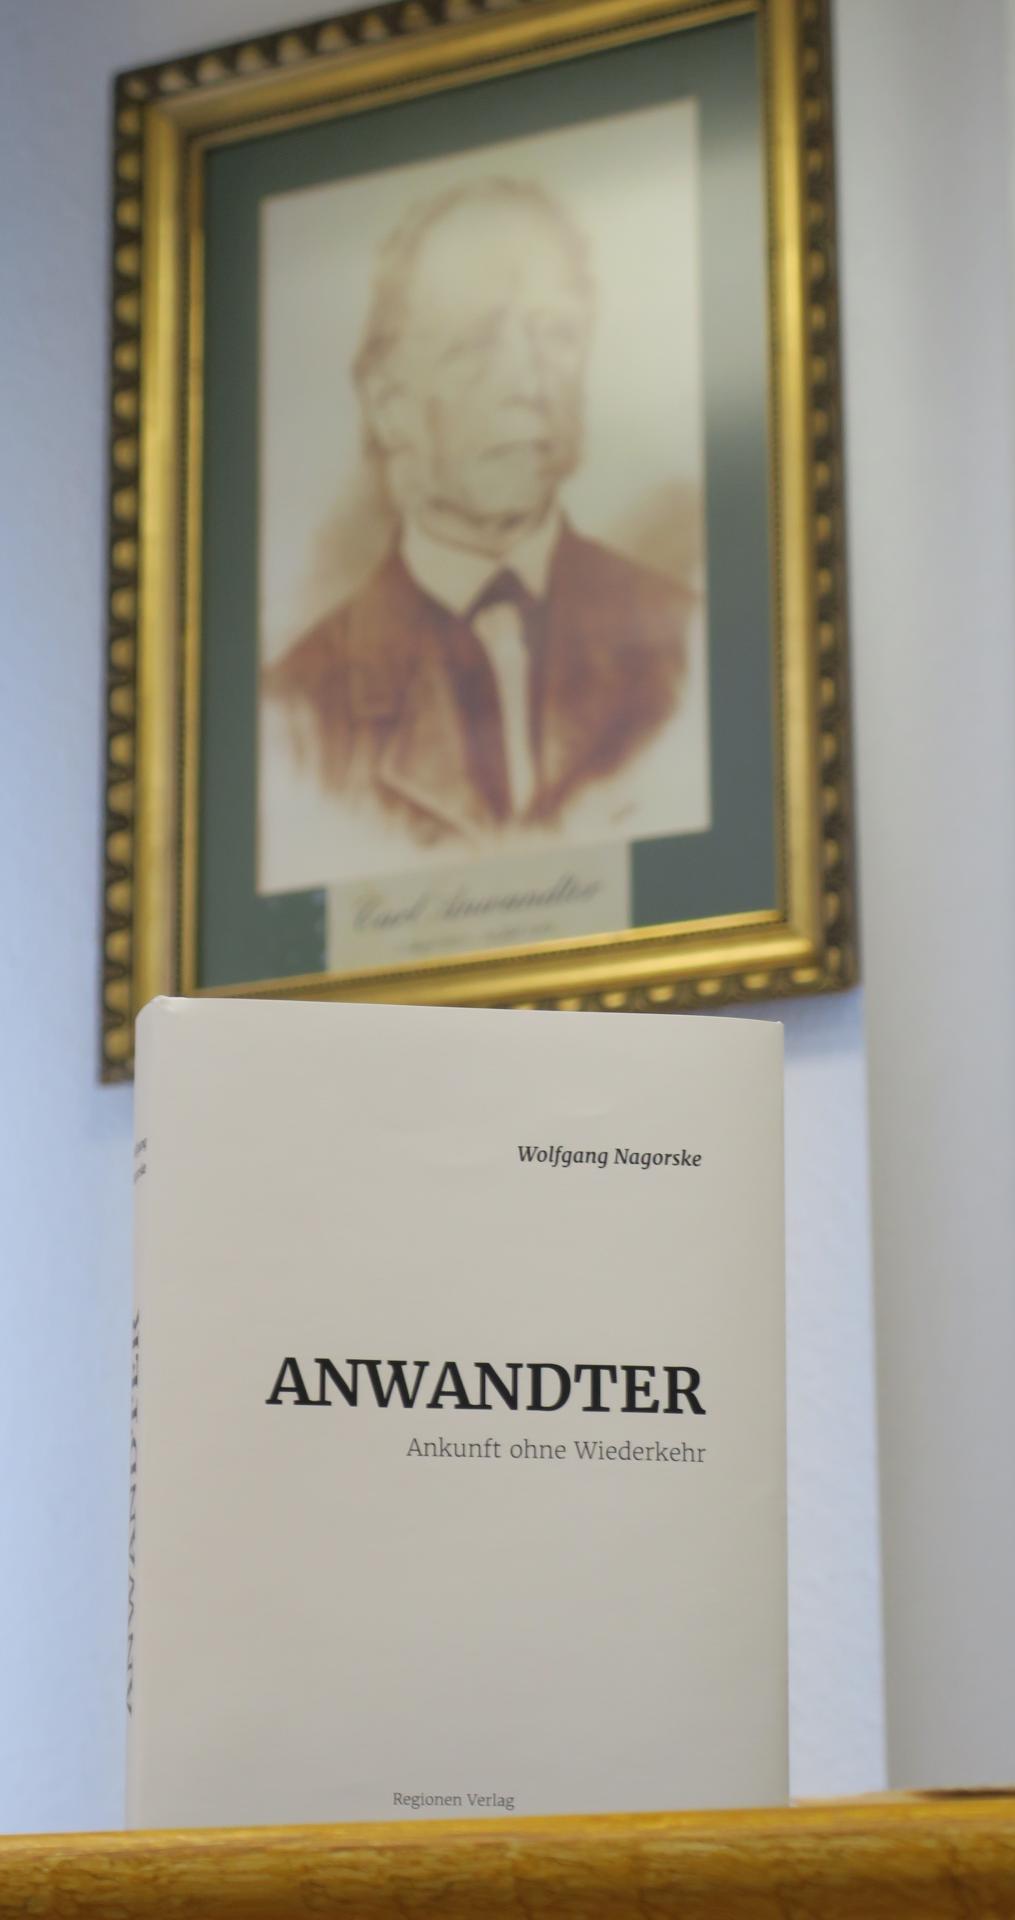 Das Buch "Anwandter" erschien im Cottbuser Regionen-Verlag. Foto: Stadt Calau / Jan Hornhauer